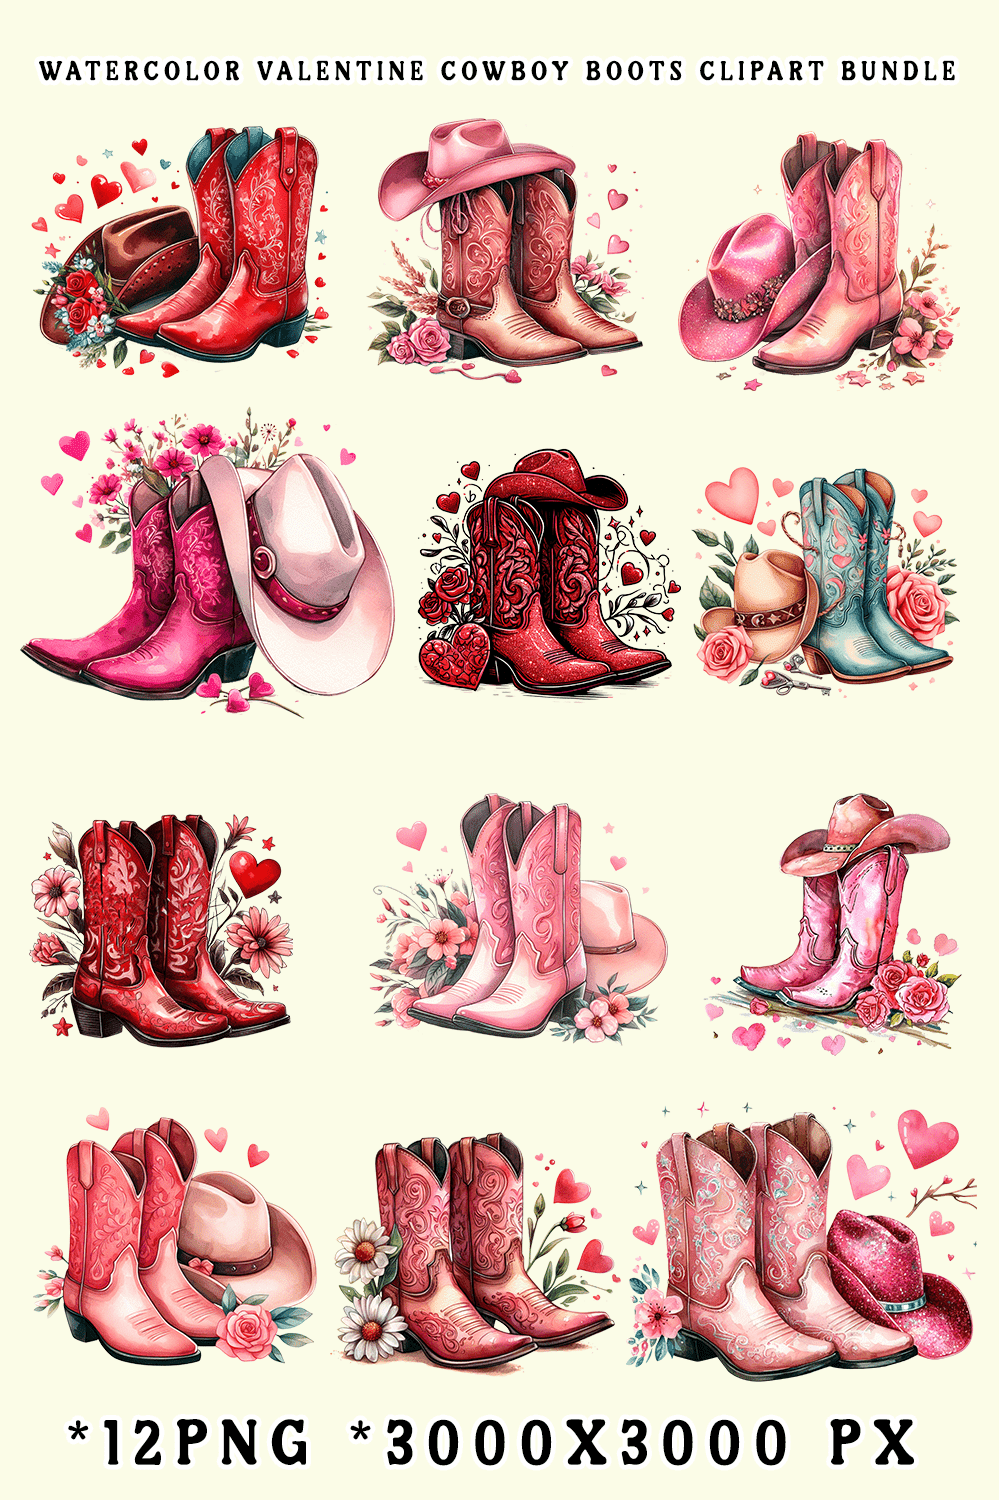 Watercolor Valentine Cowboy Boots Clipart Bundle pinterest preview image.